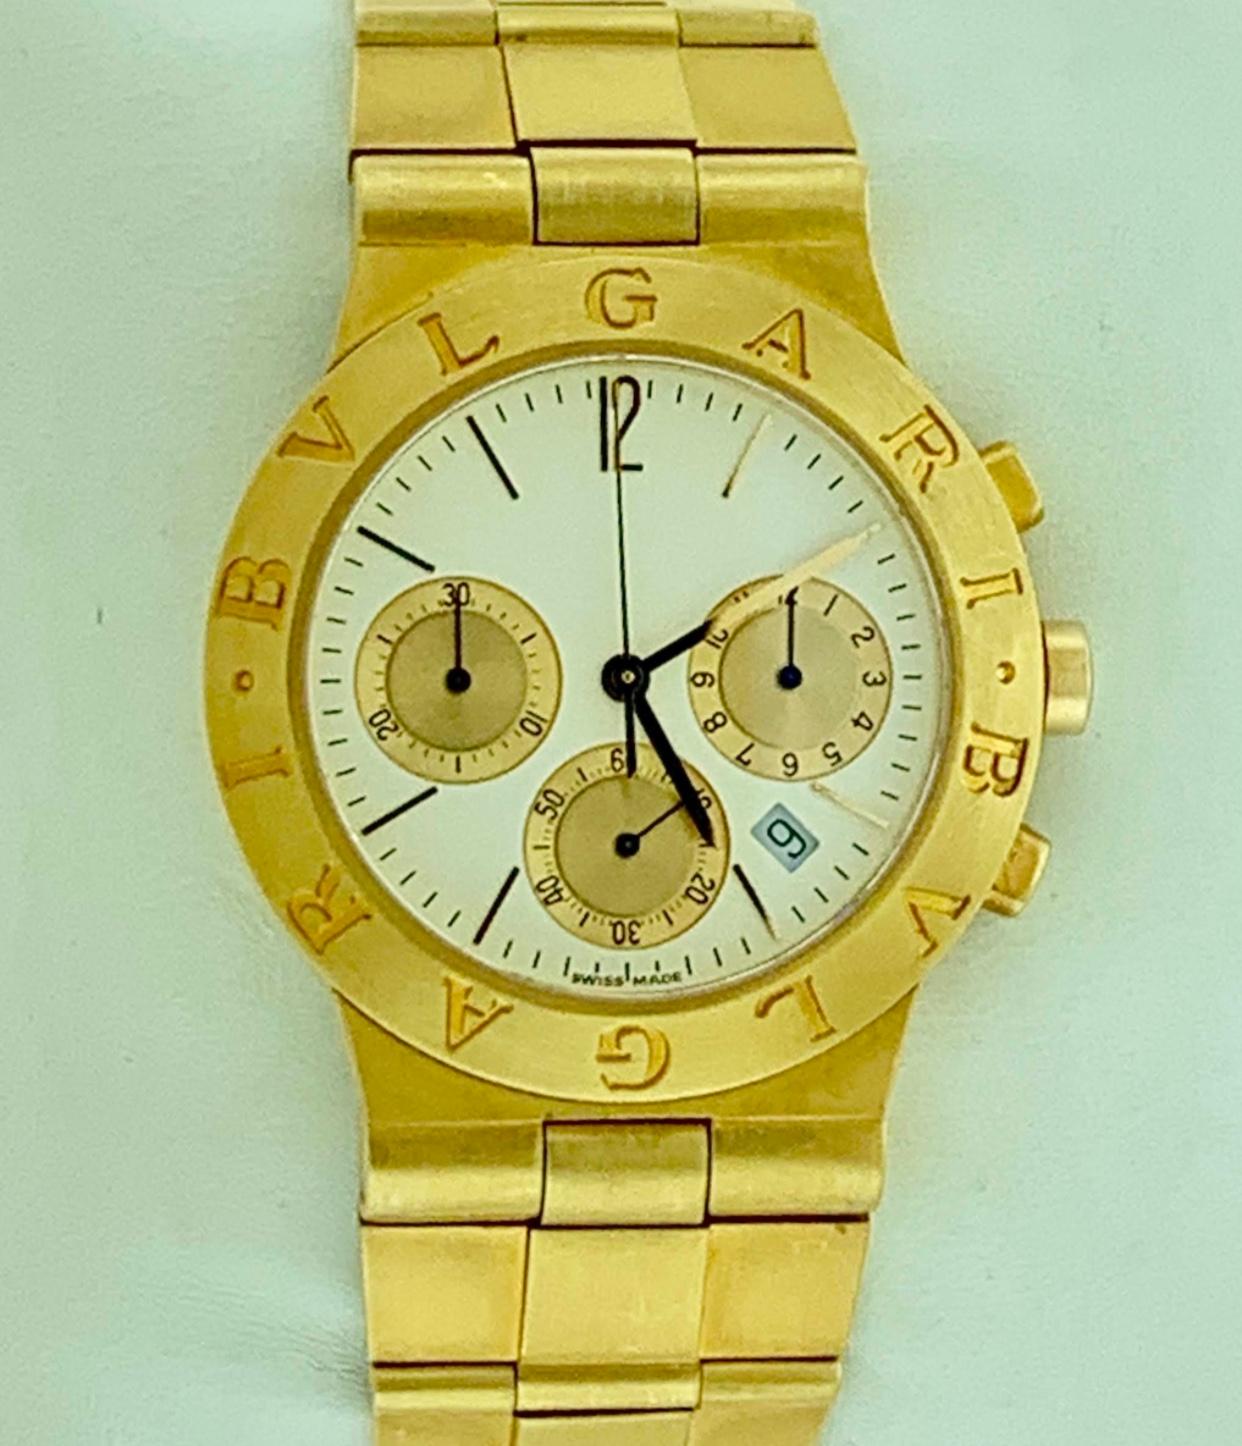 165 Gm 18 Karat Yellow Gold Bvlgari Chrono Watch Unisex Bvlgari Logo Watch 1